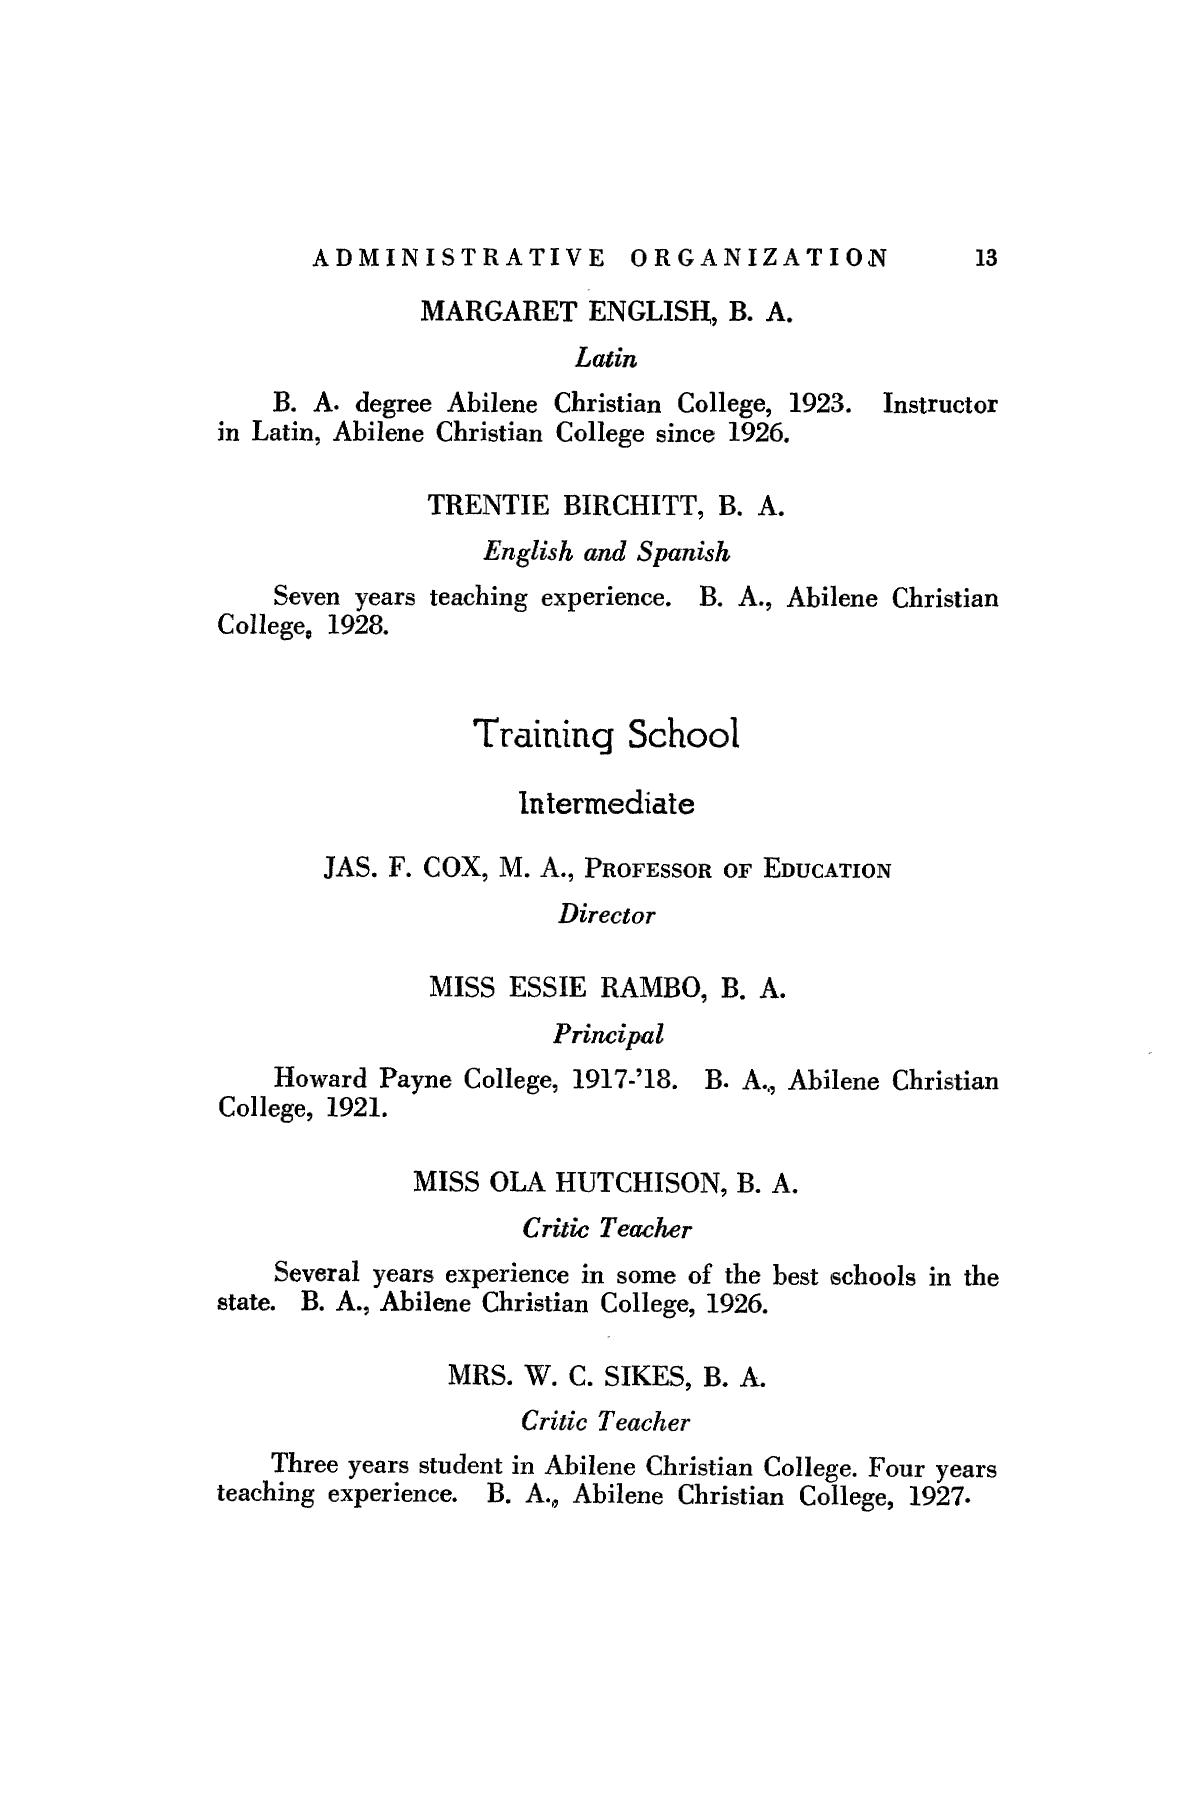 Catalog of Abilene Christian College, 1927-1928
                                                
                                                    13
                                                